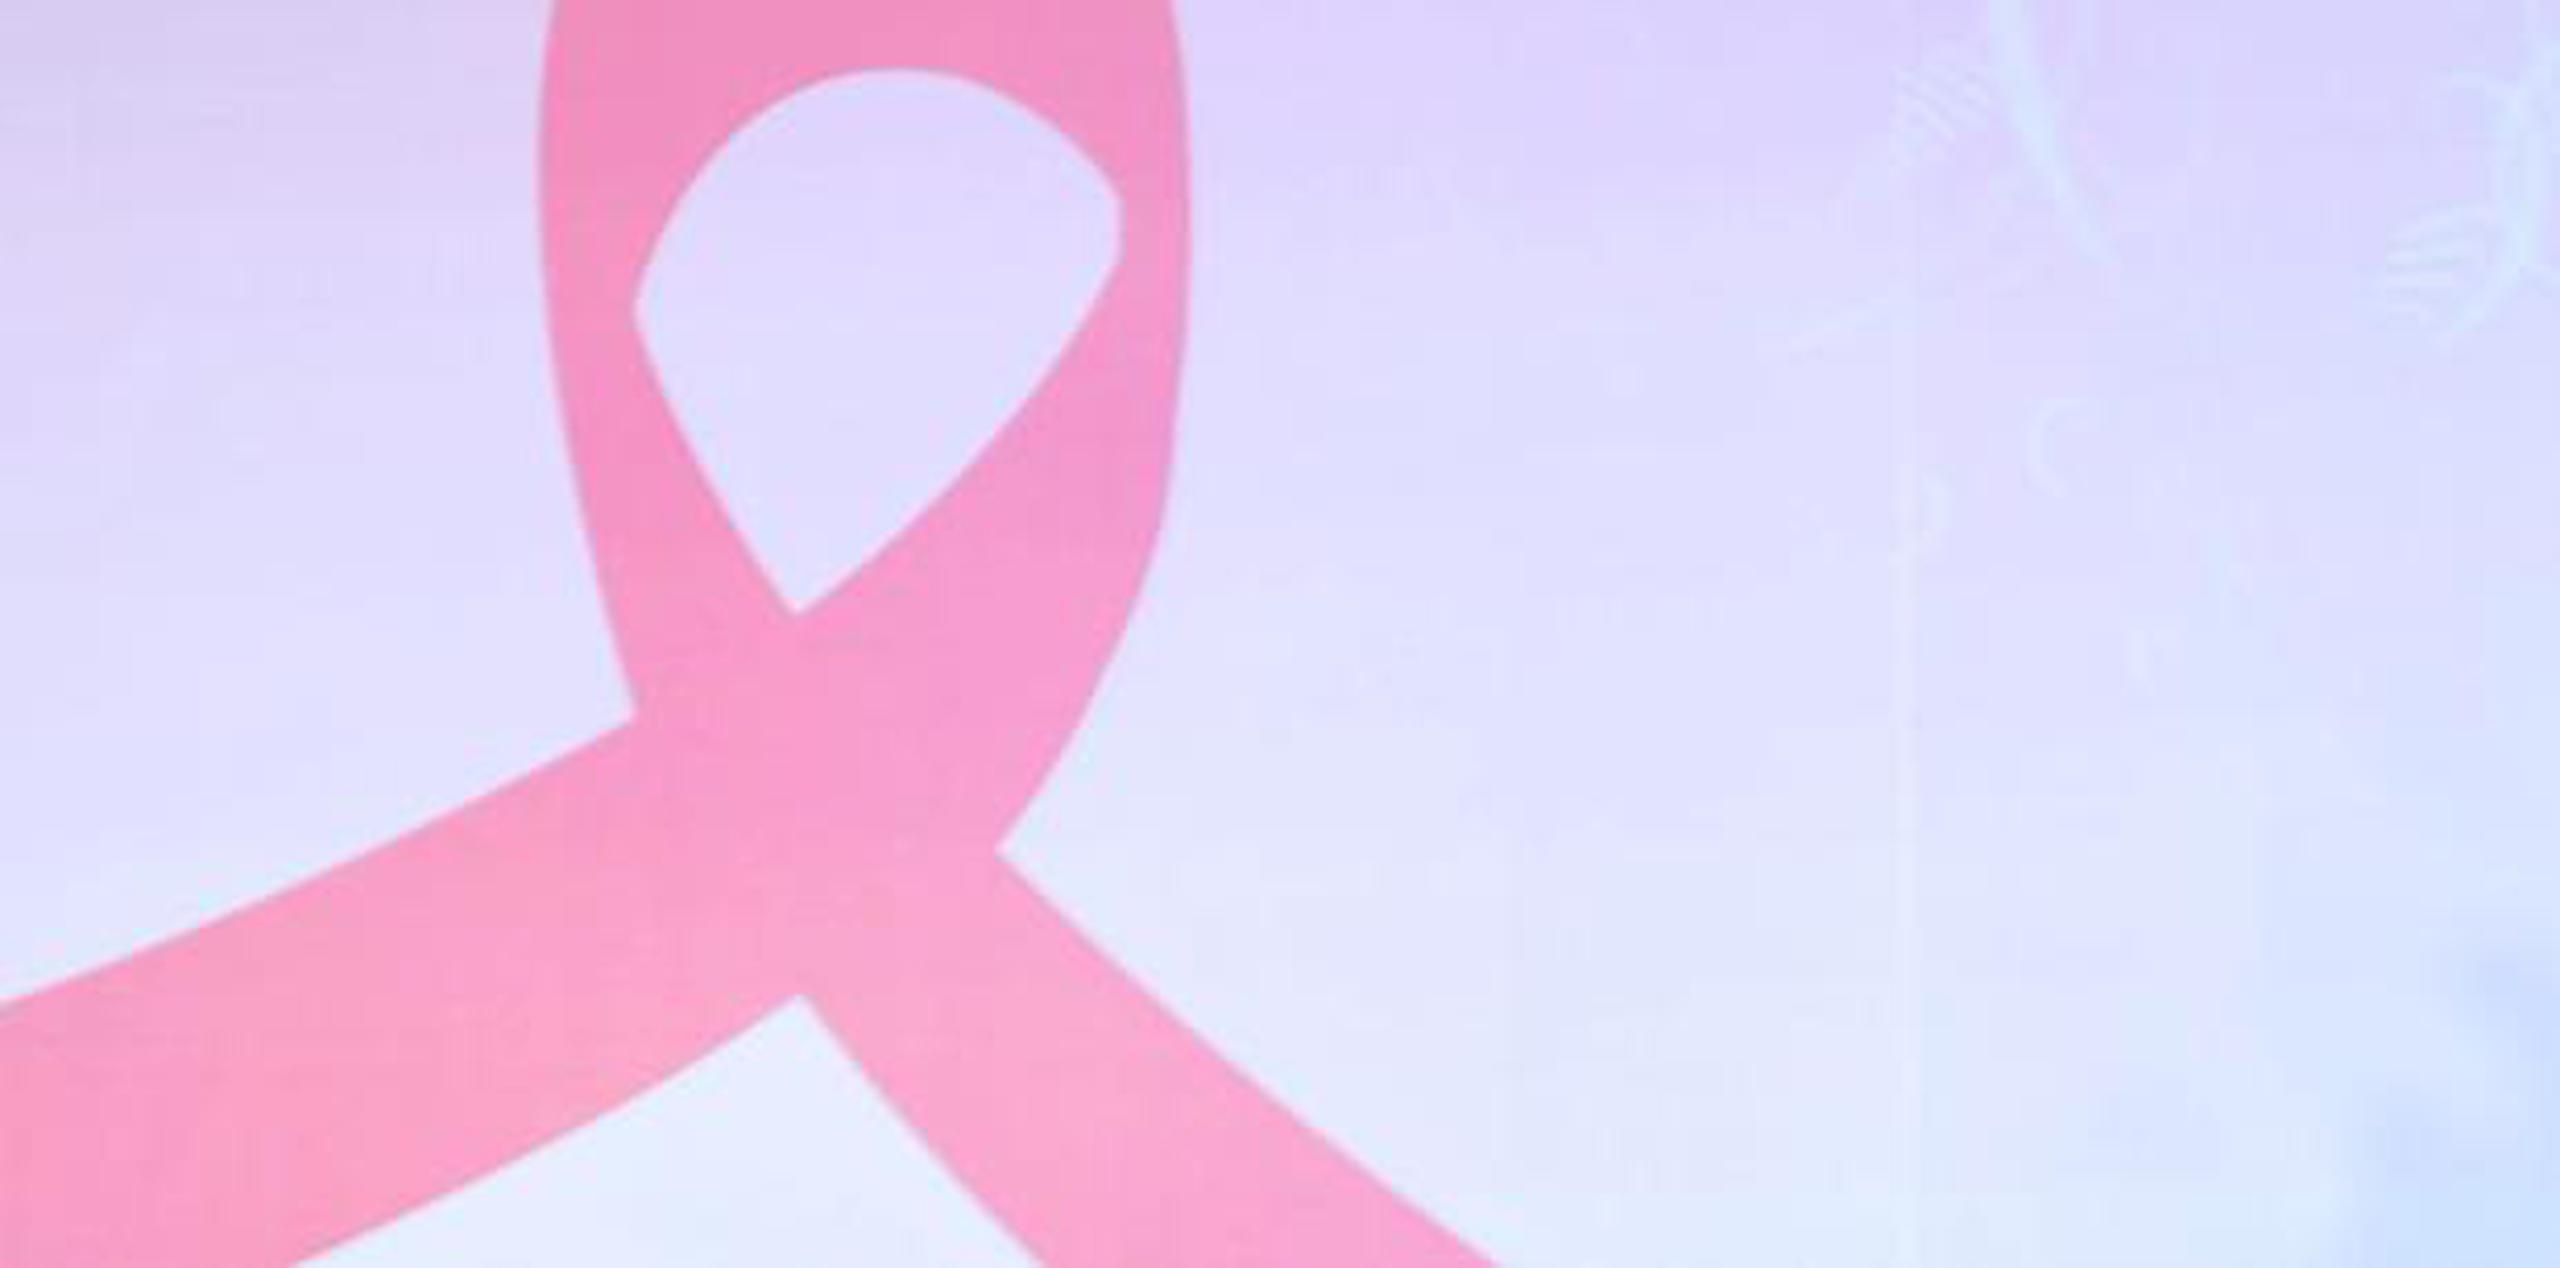 Las pacientes que podrían beneficiarse son aquellas con cáncer de mama hormonosensible precoz con alto riesgo de desarrollar metástasis en 10 años.  (archivo)